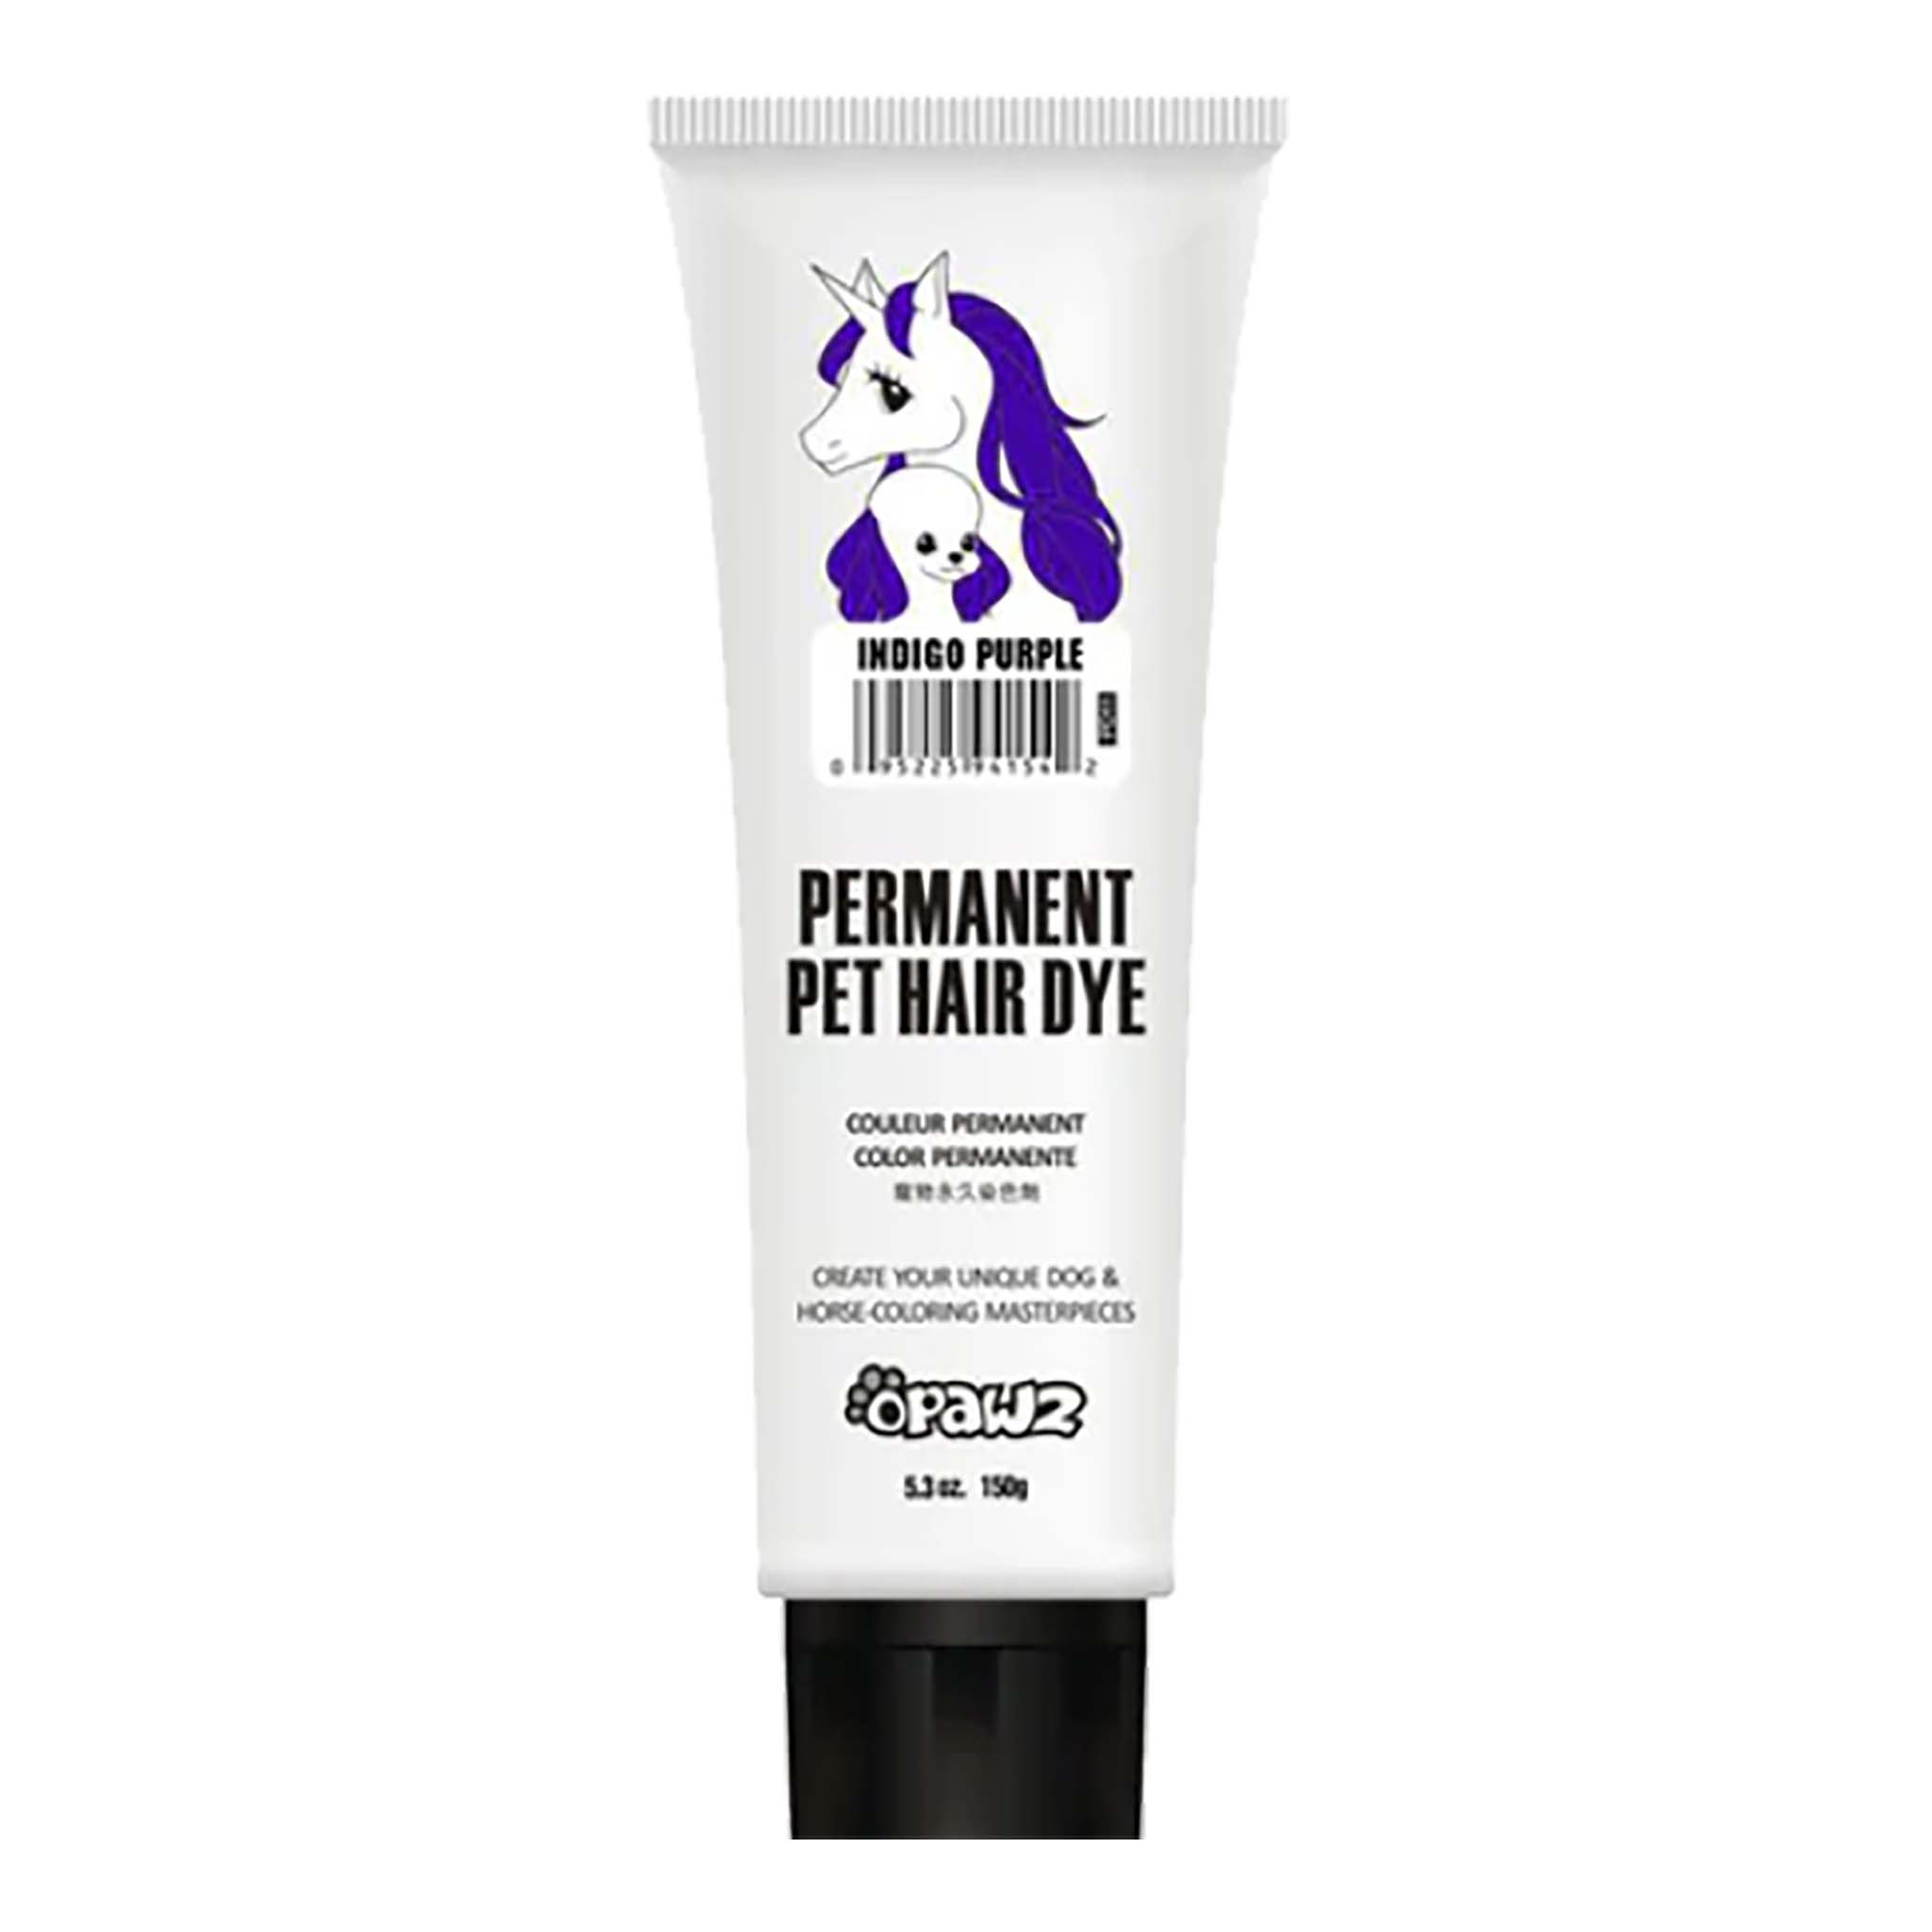 Opawz Permanent Pet Hair Dye, 150 gm